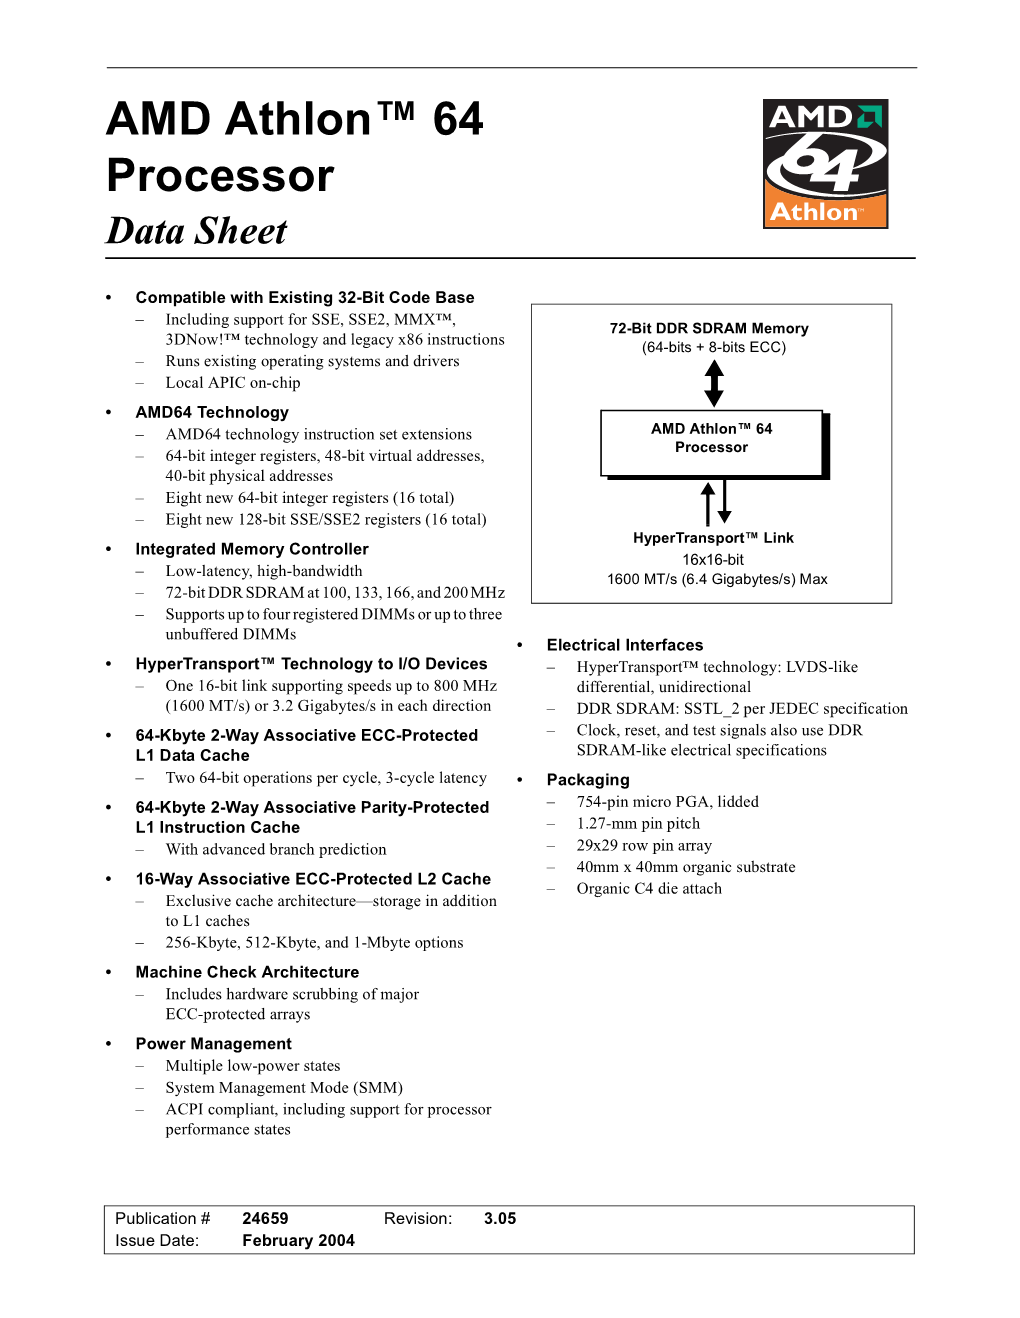 AMD Athlon 64 Processor Data Sheet (Public)